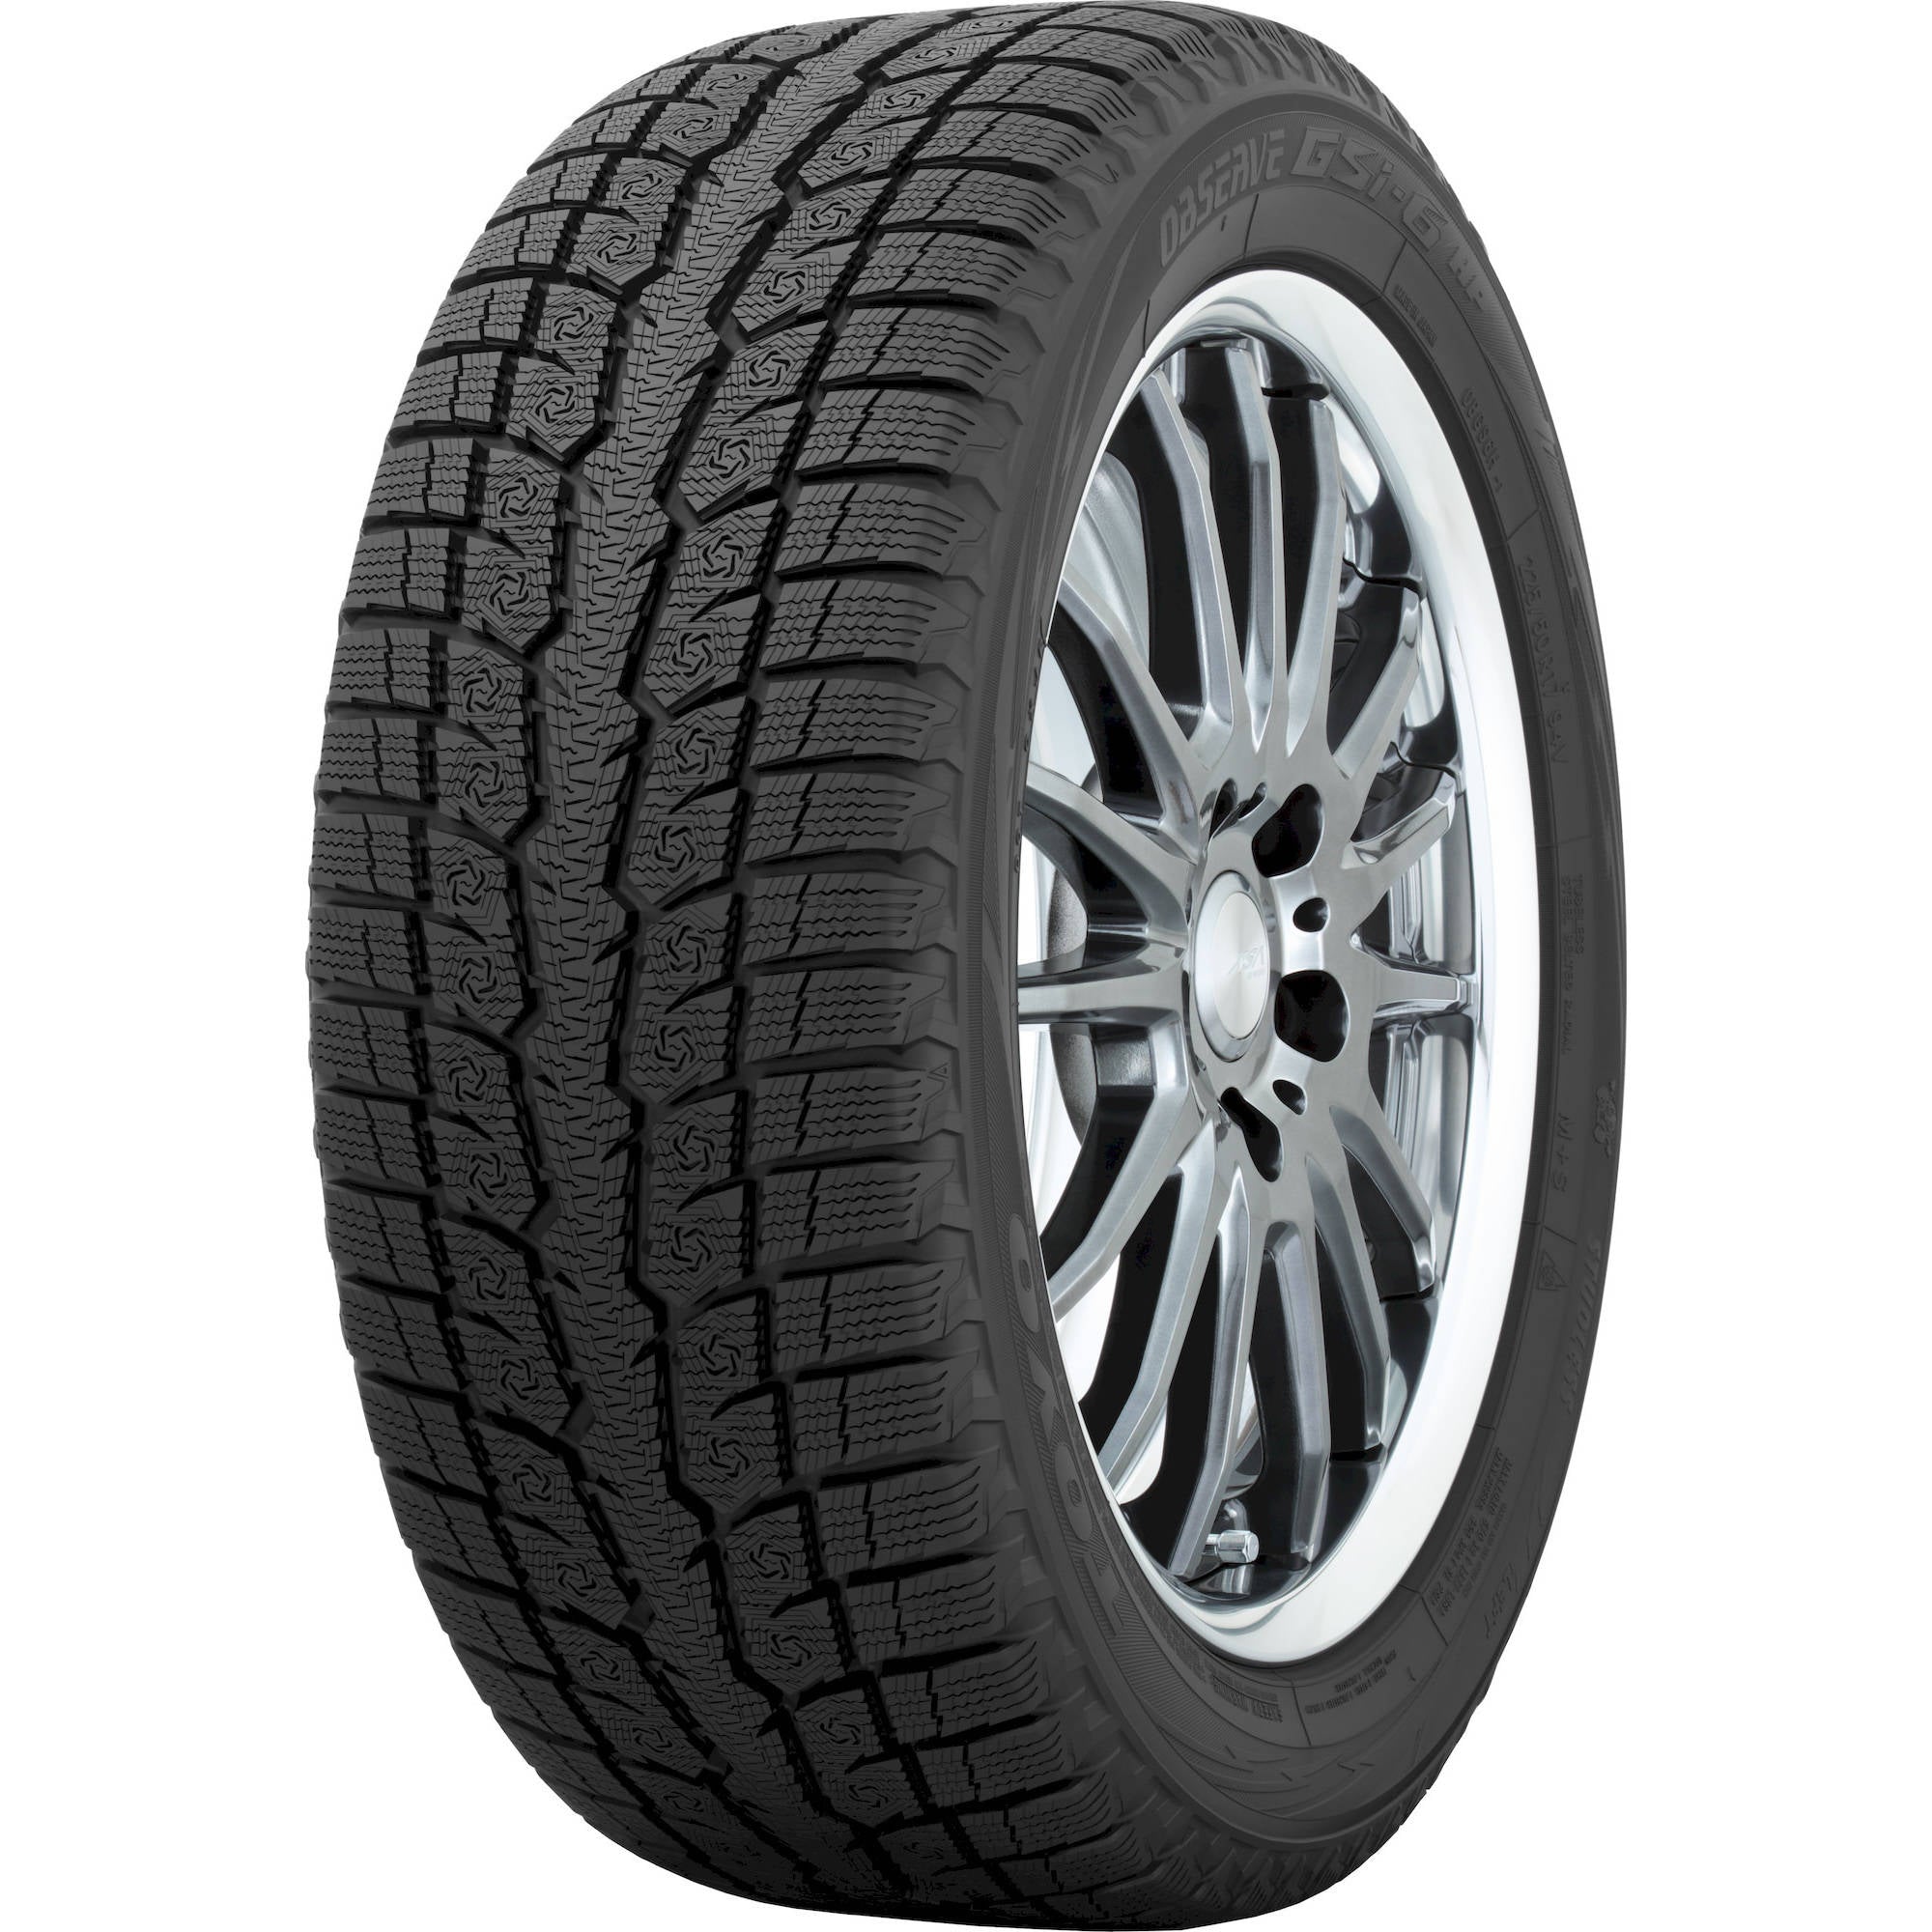 TOYO TIRES OBSERVE GSI-6 205/65R15 (25.5X8.1R 15) Tires